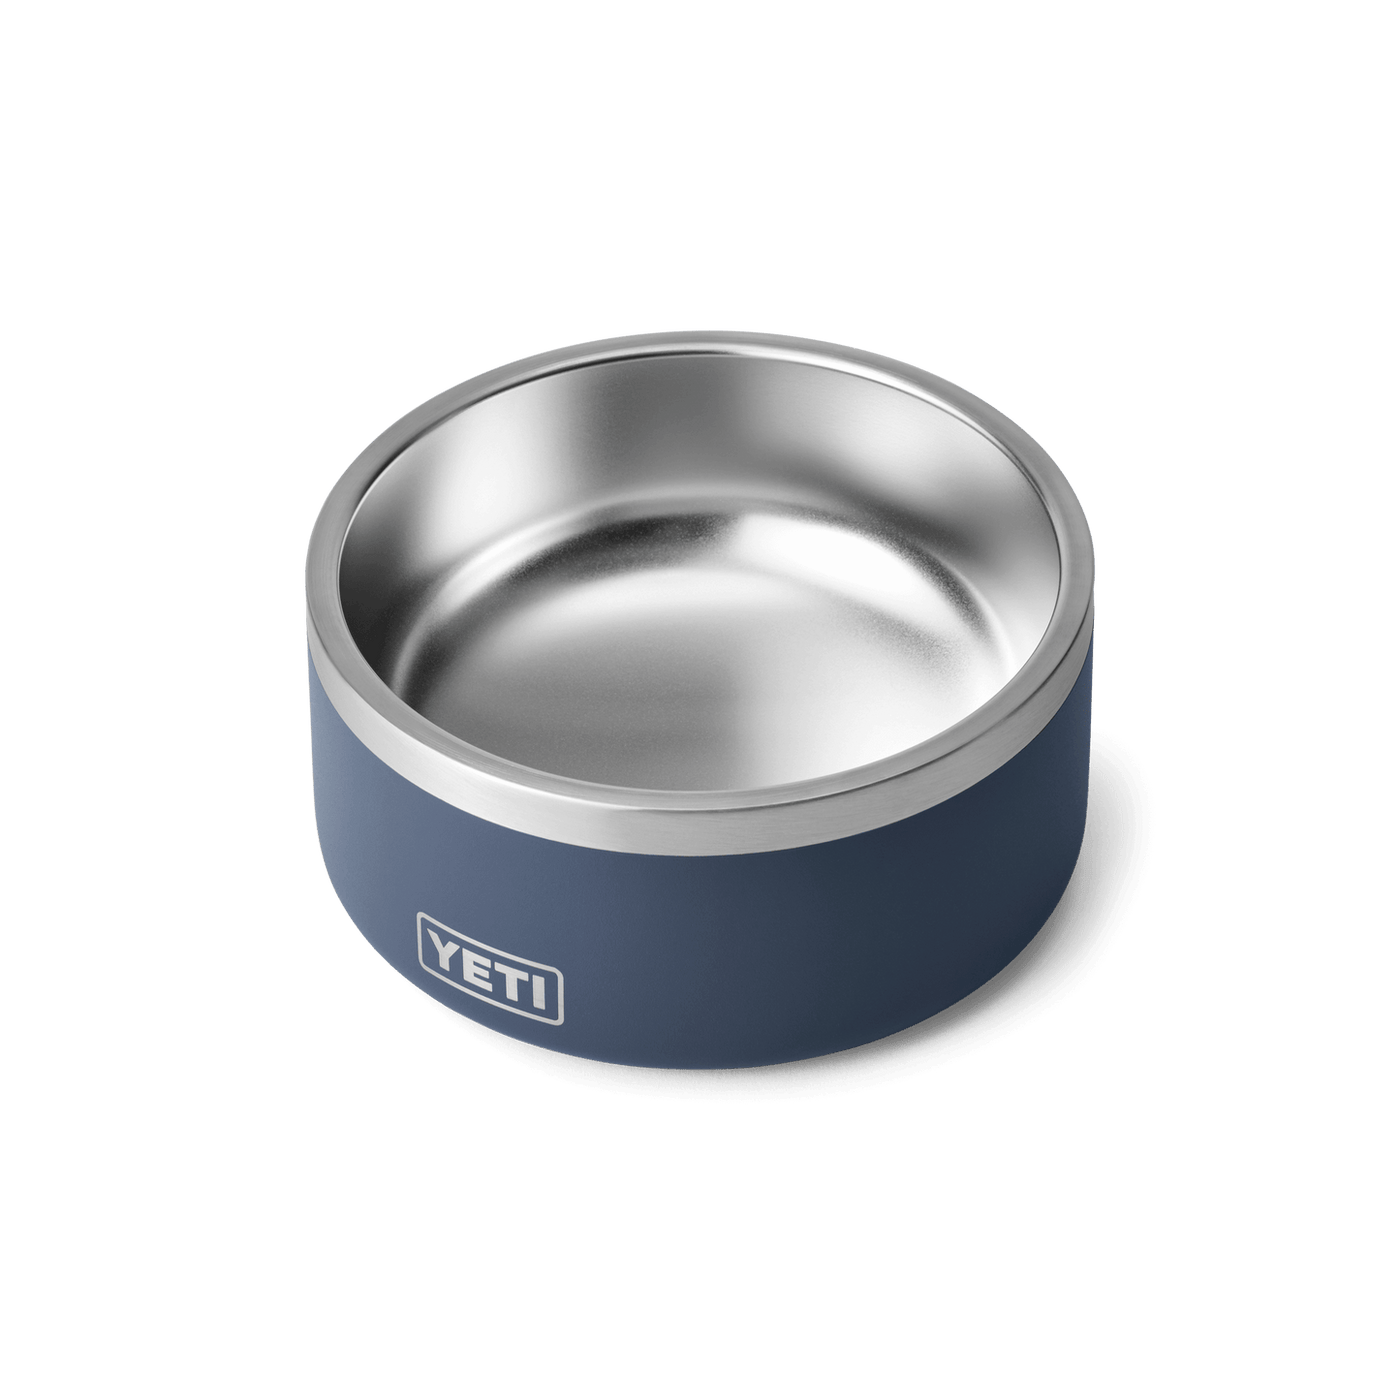 Boomer 8 Dog Bowl (1.8L)